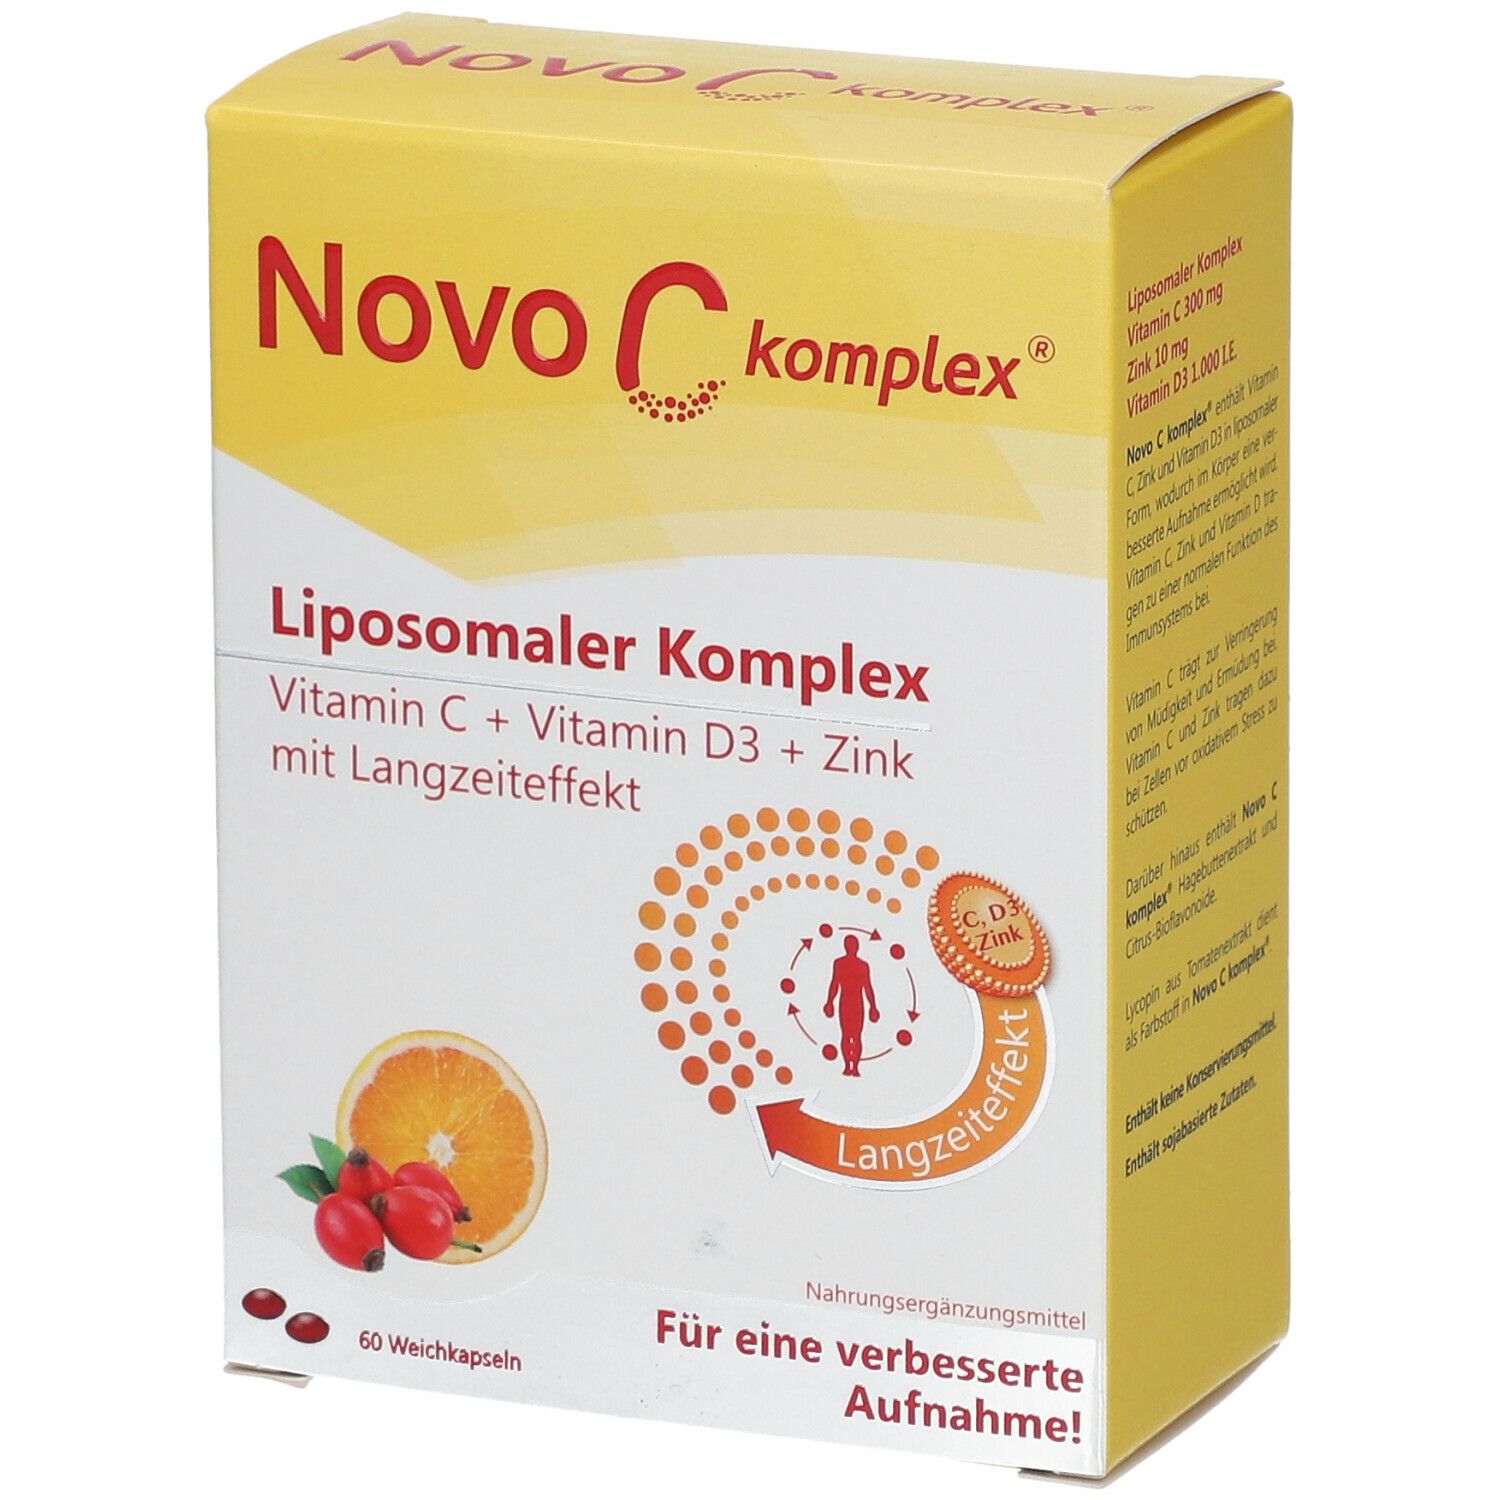 Novo C komplex® Liposomaler Komplex